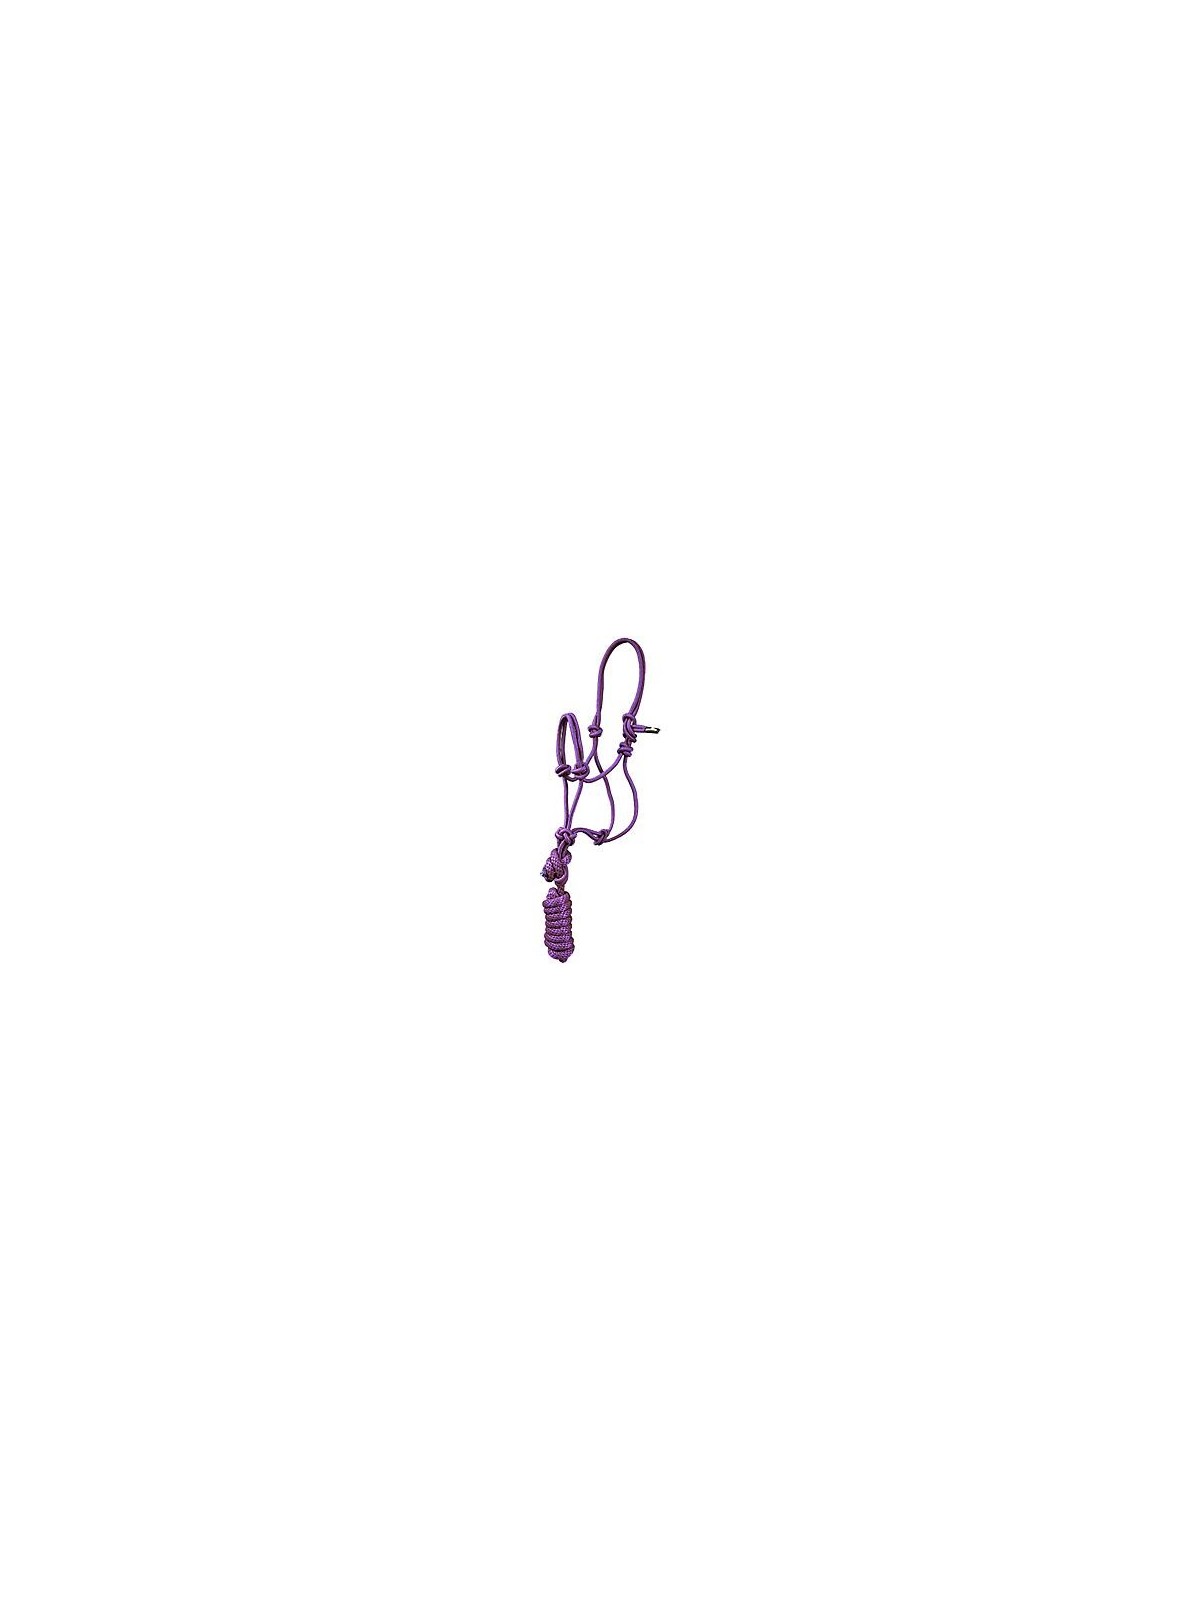 Pony-Miniature Rope Halter purple